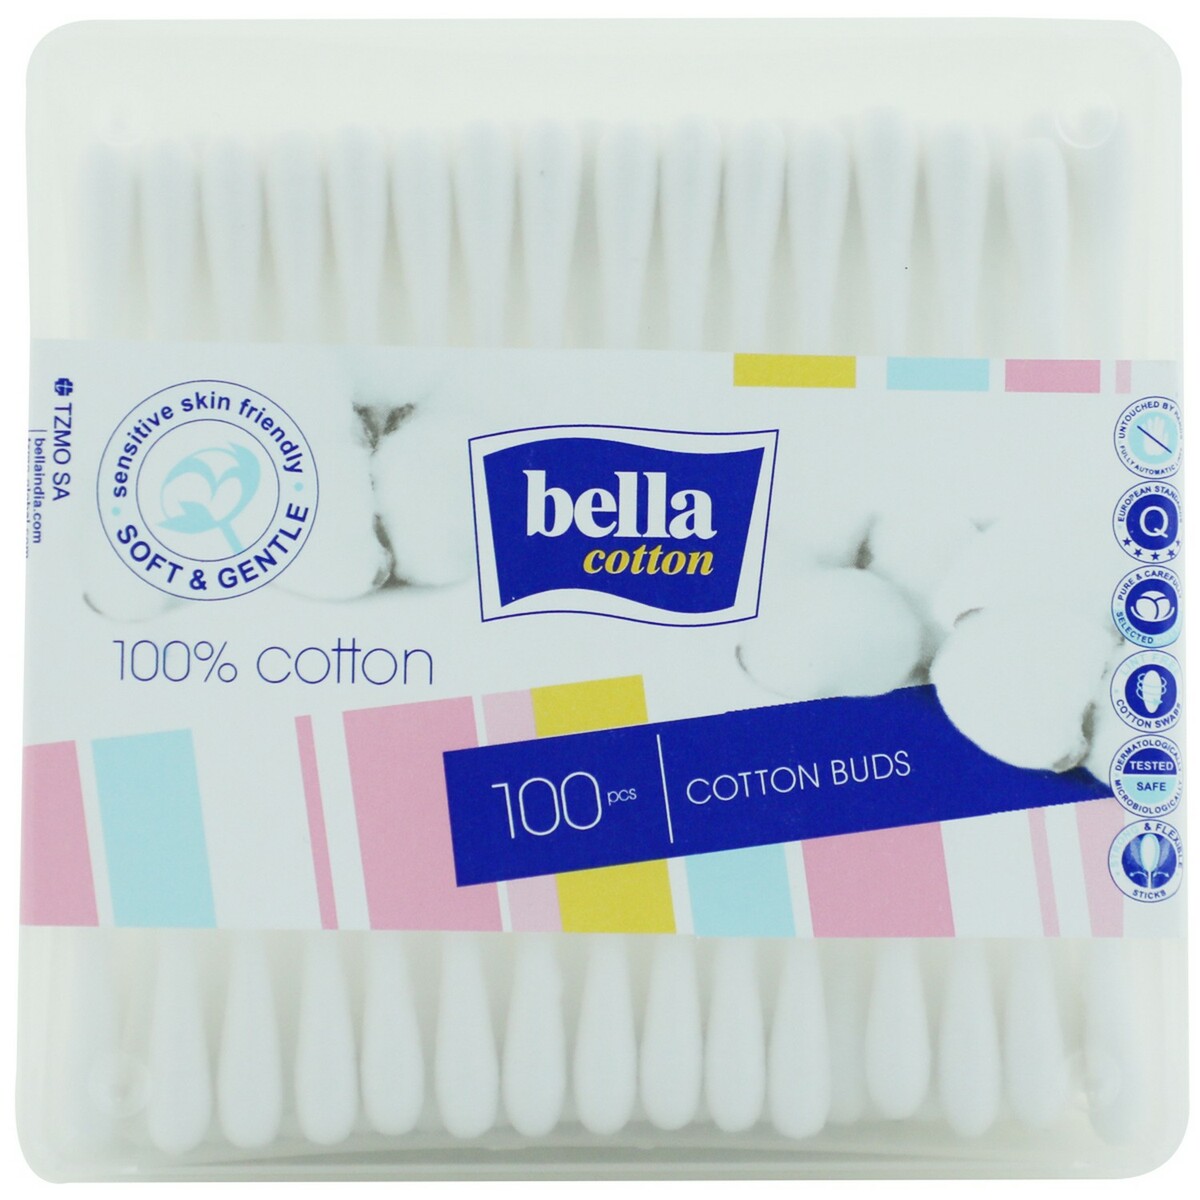 Bella Cotton Bud Box 100's